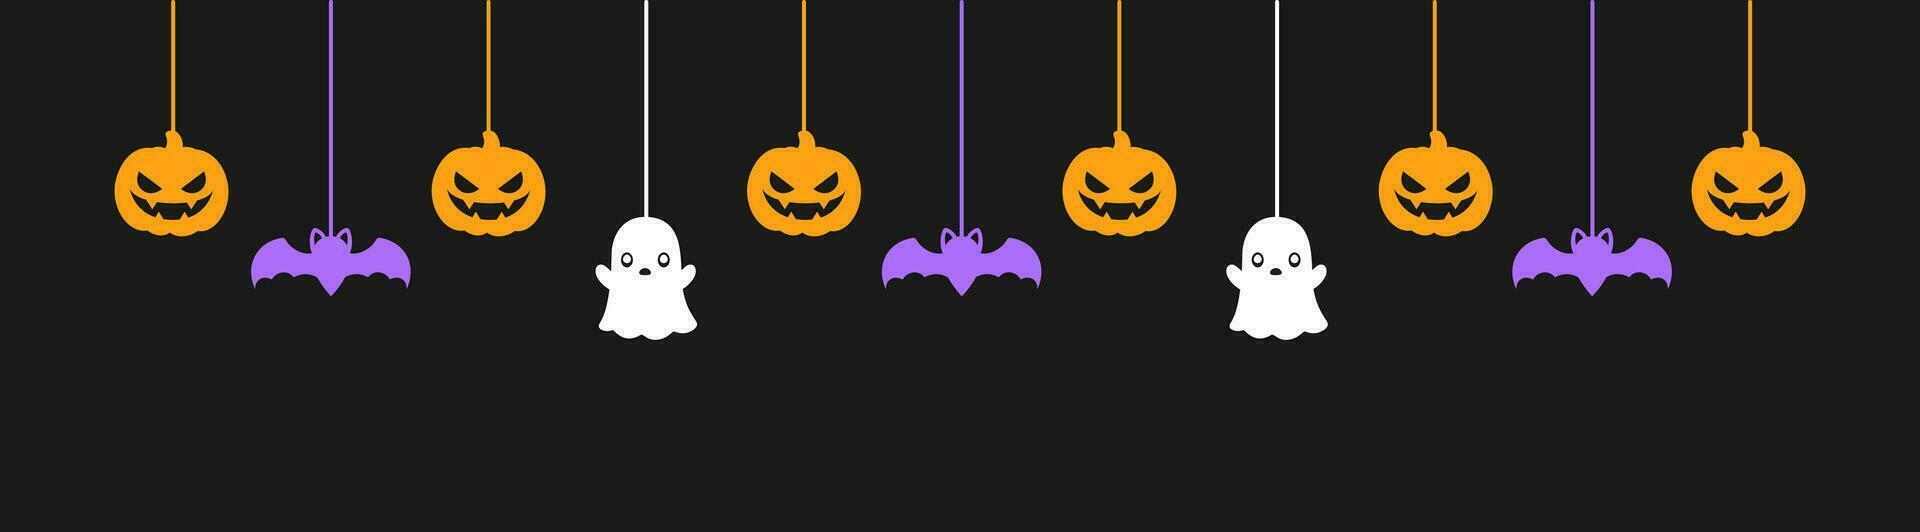 Lycklig halloween baner eller gräns med svart fladdermöss, spöke och domkraft o lykta pumpor. hängande läskigt ornament dekoration vektor illustration, lura eller behandla fest inbjudan